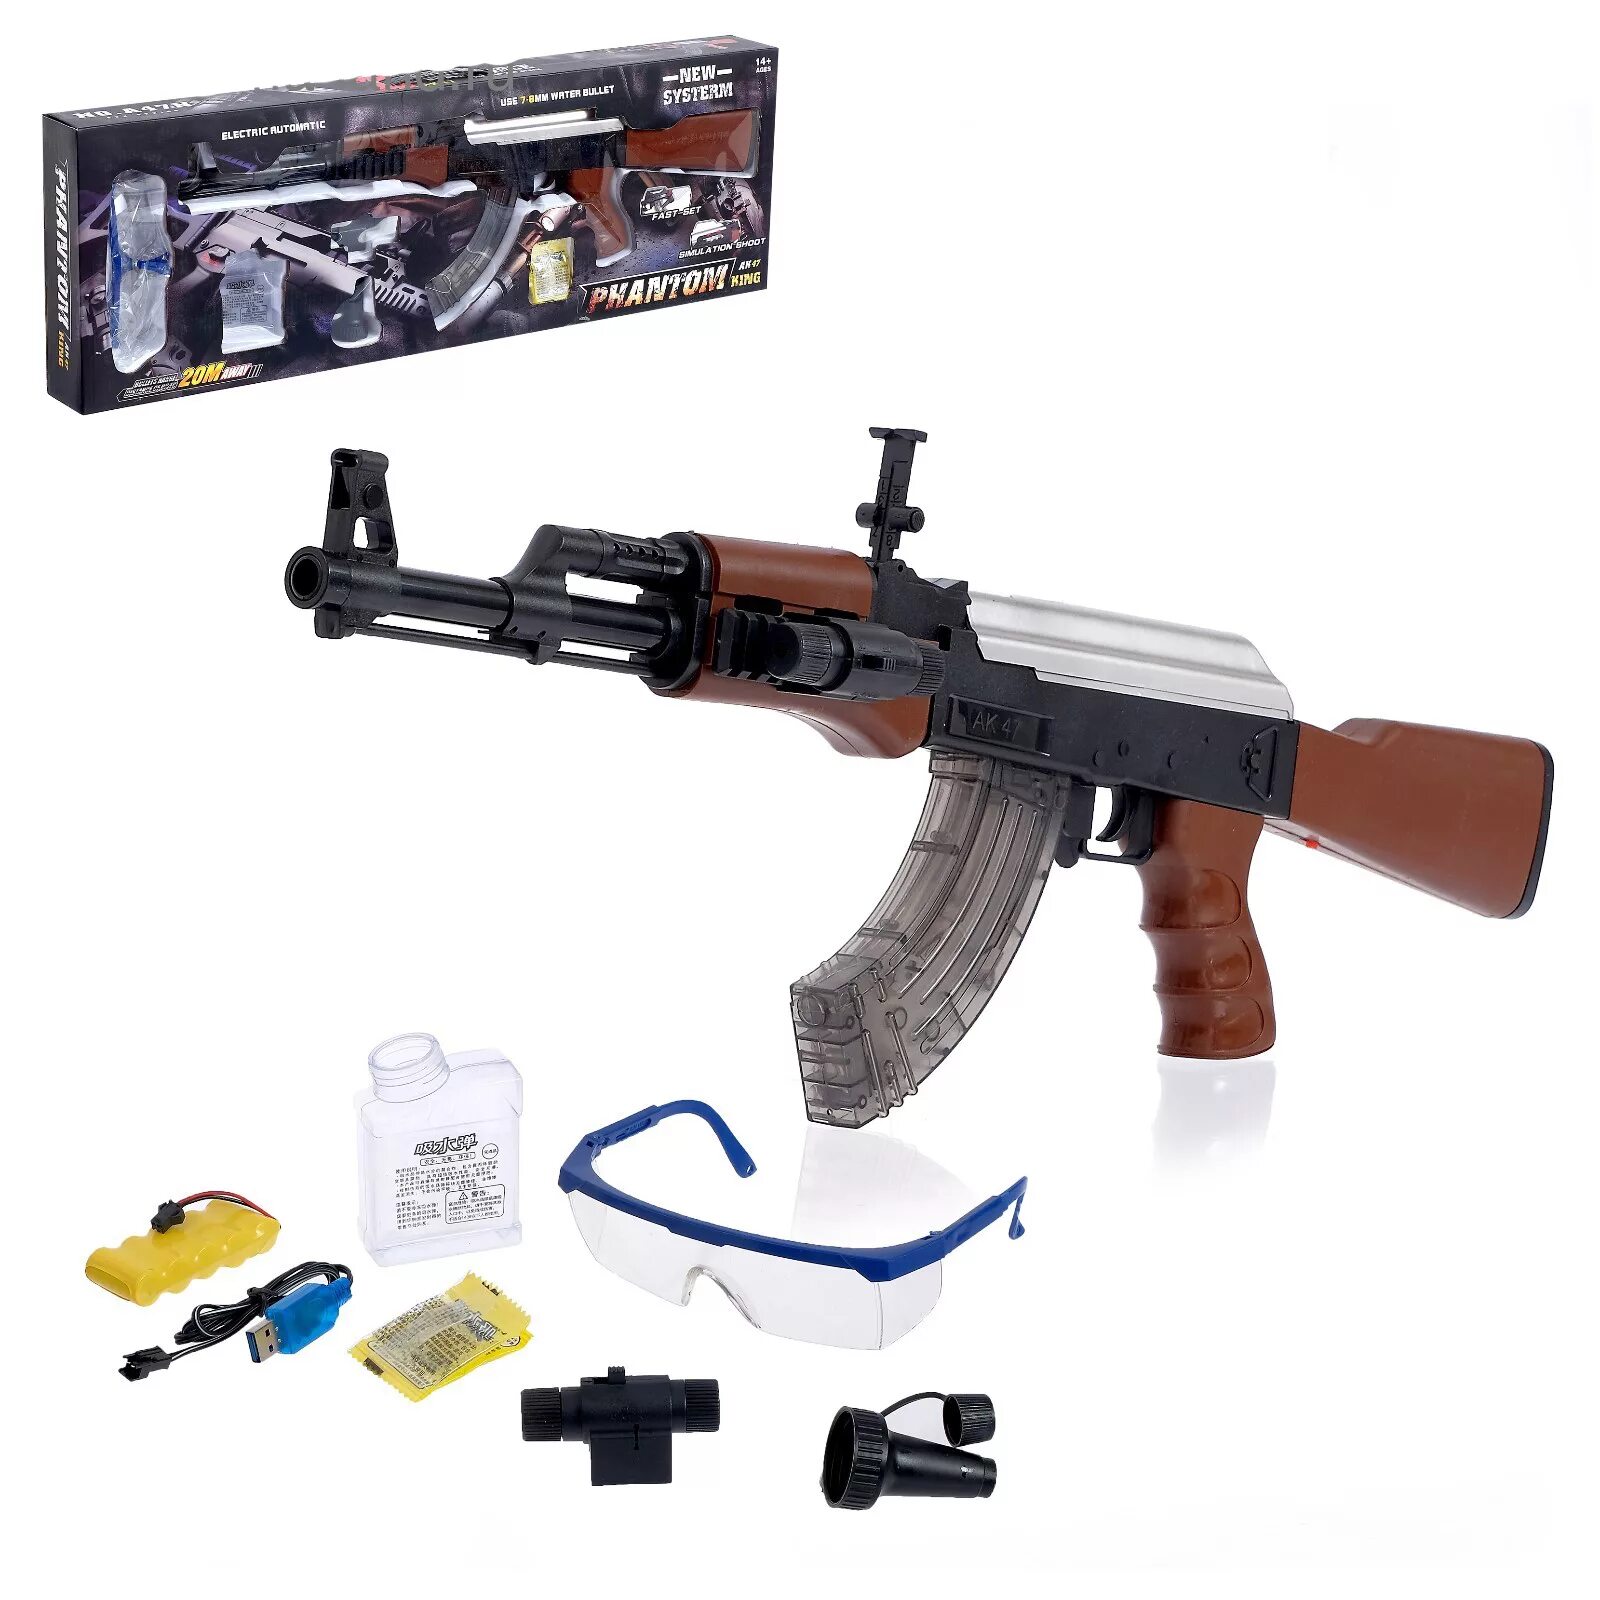 Автомат CS Toys AK-47 a47n. Автомат Калашникова АК-47 игрушка с гелием пульками. Автомат с гелевыми пулями на аккумуляторе (2 режима стрельбы + лазер). Автомат АК 47 на аккумуляторе с пульками.